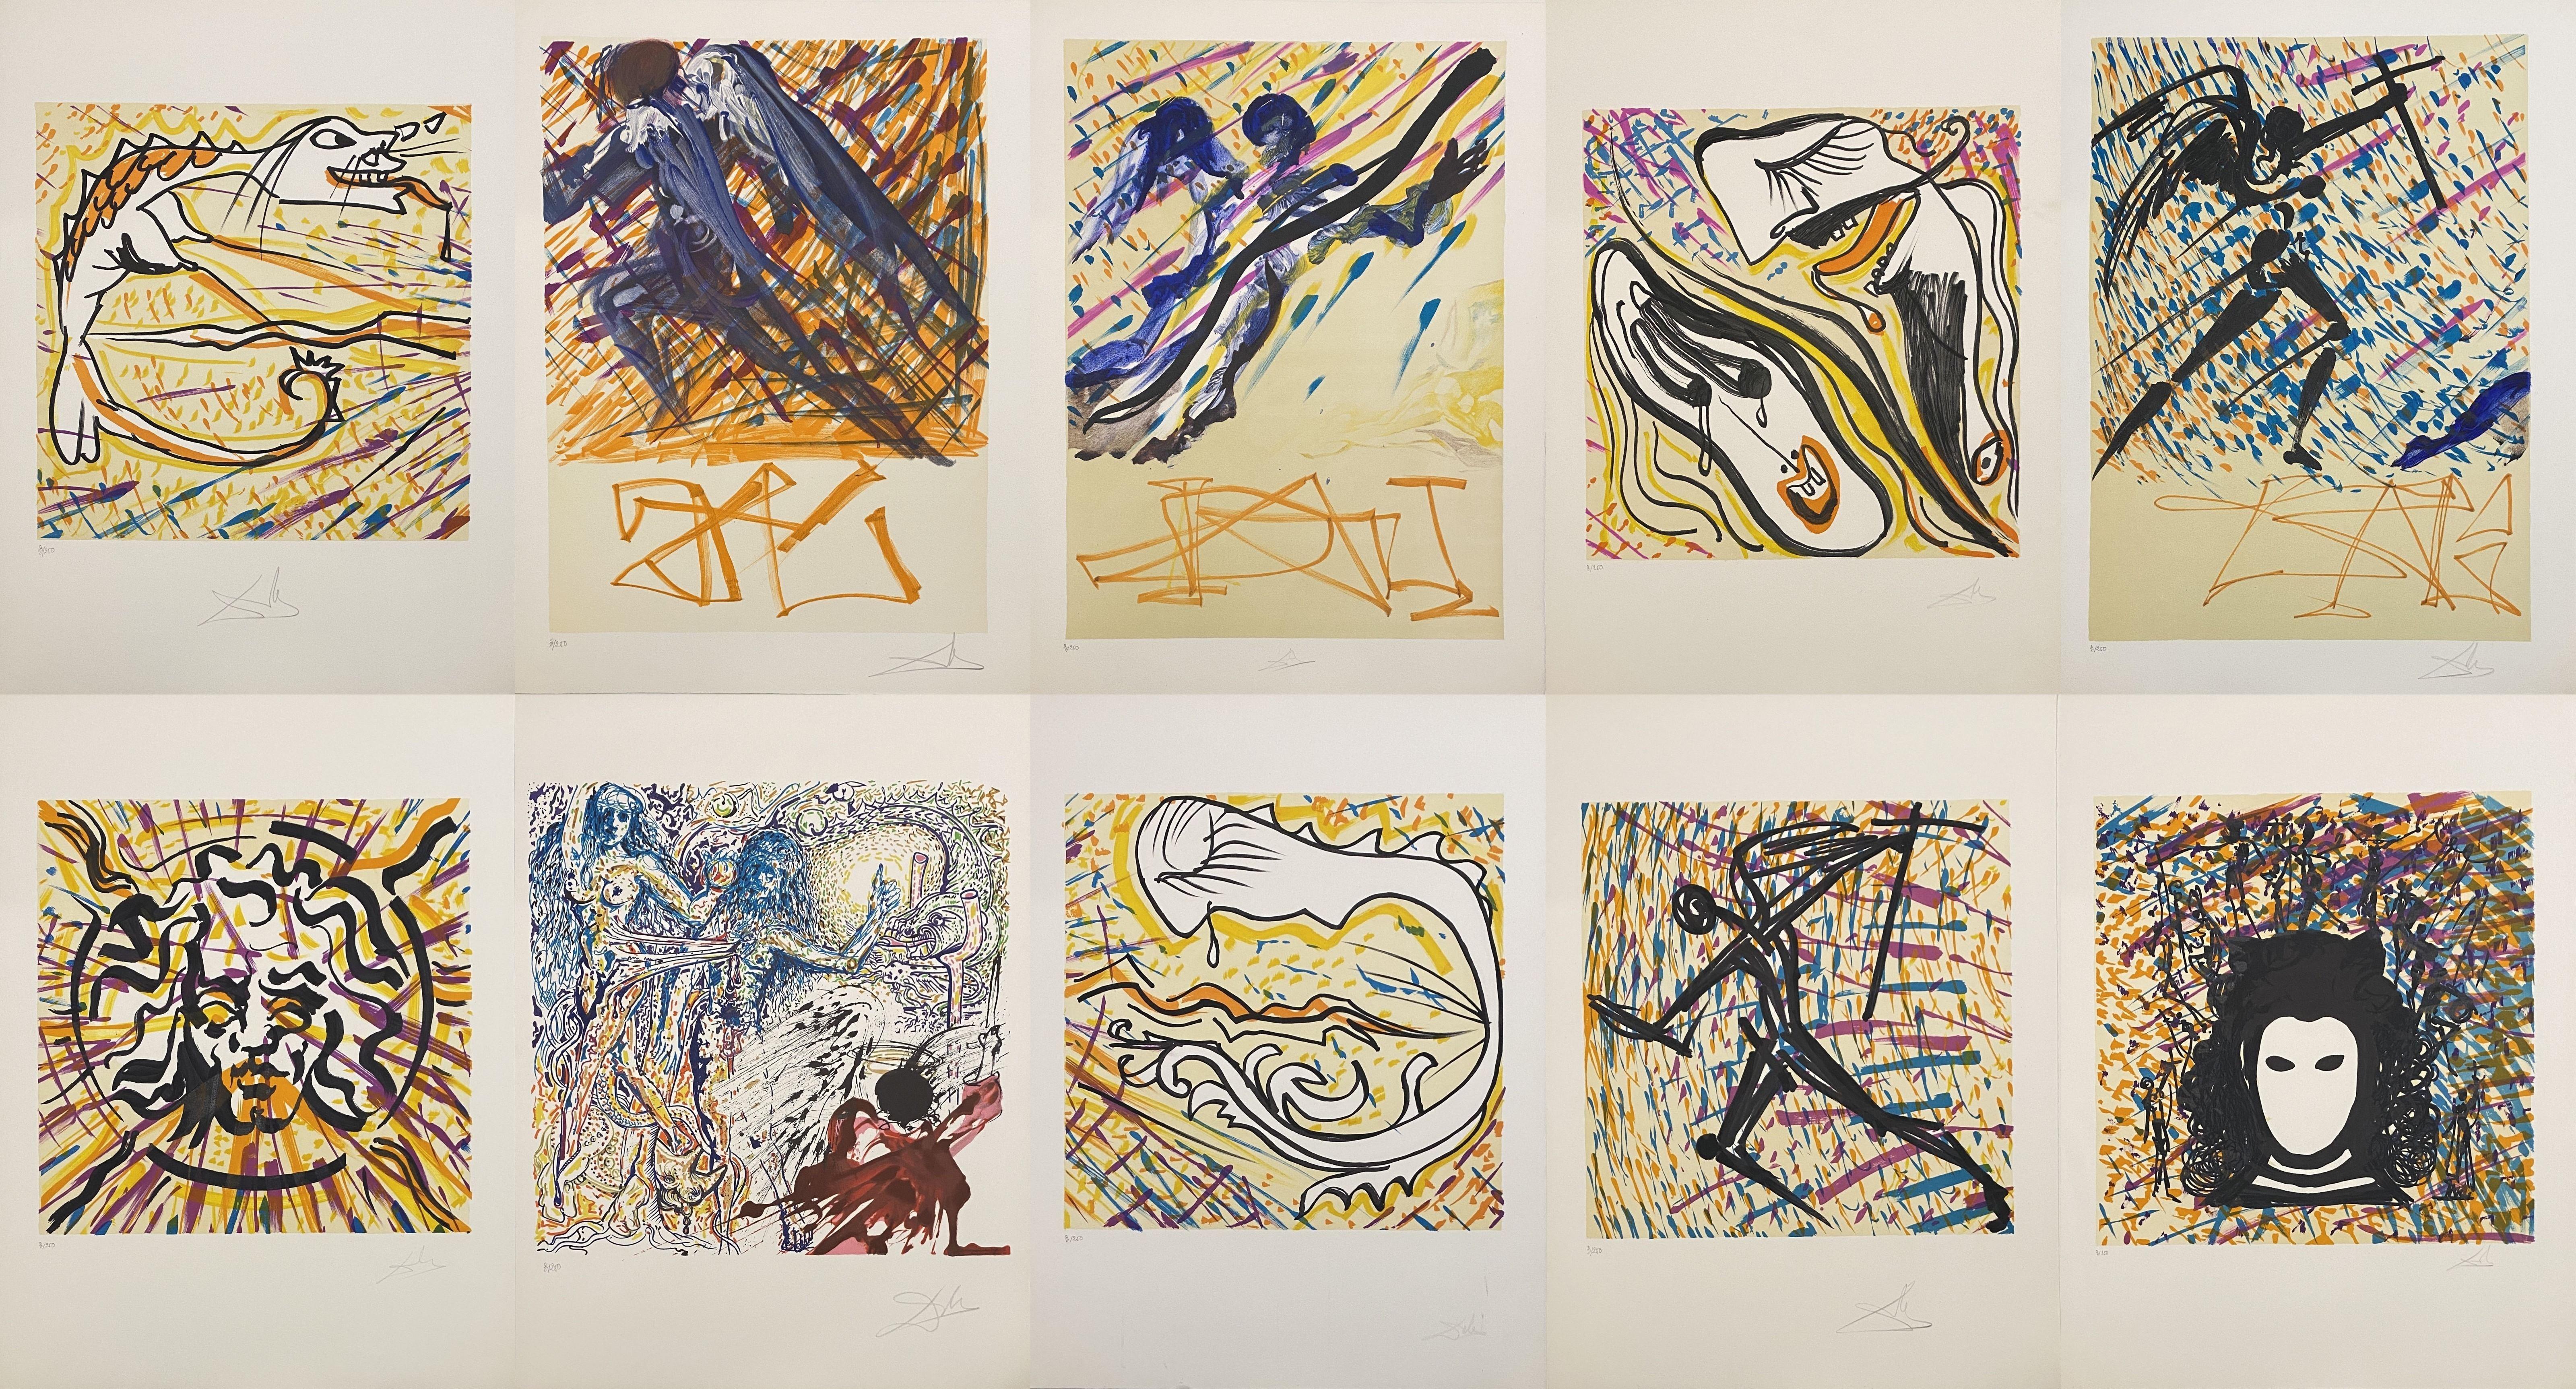 Vitraux - Ensemble complet de 24 lithographies signées à la main et/250 dans un coffret (feuille 74-5) - Surréalisme Print par Salvador Dalí